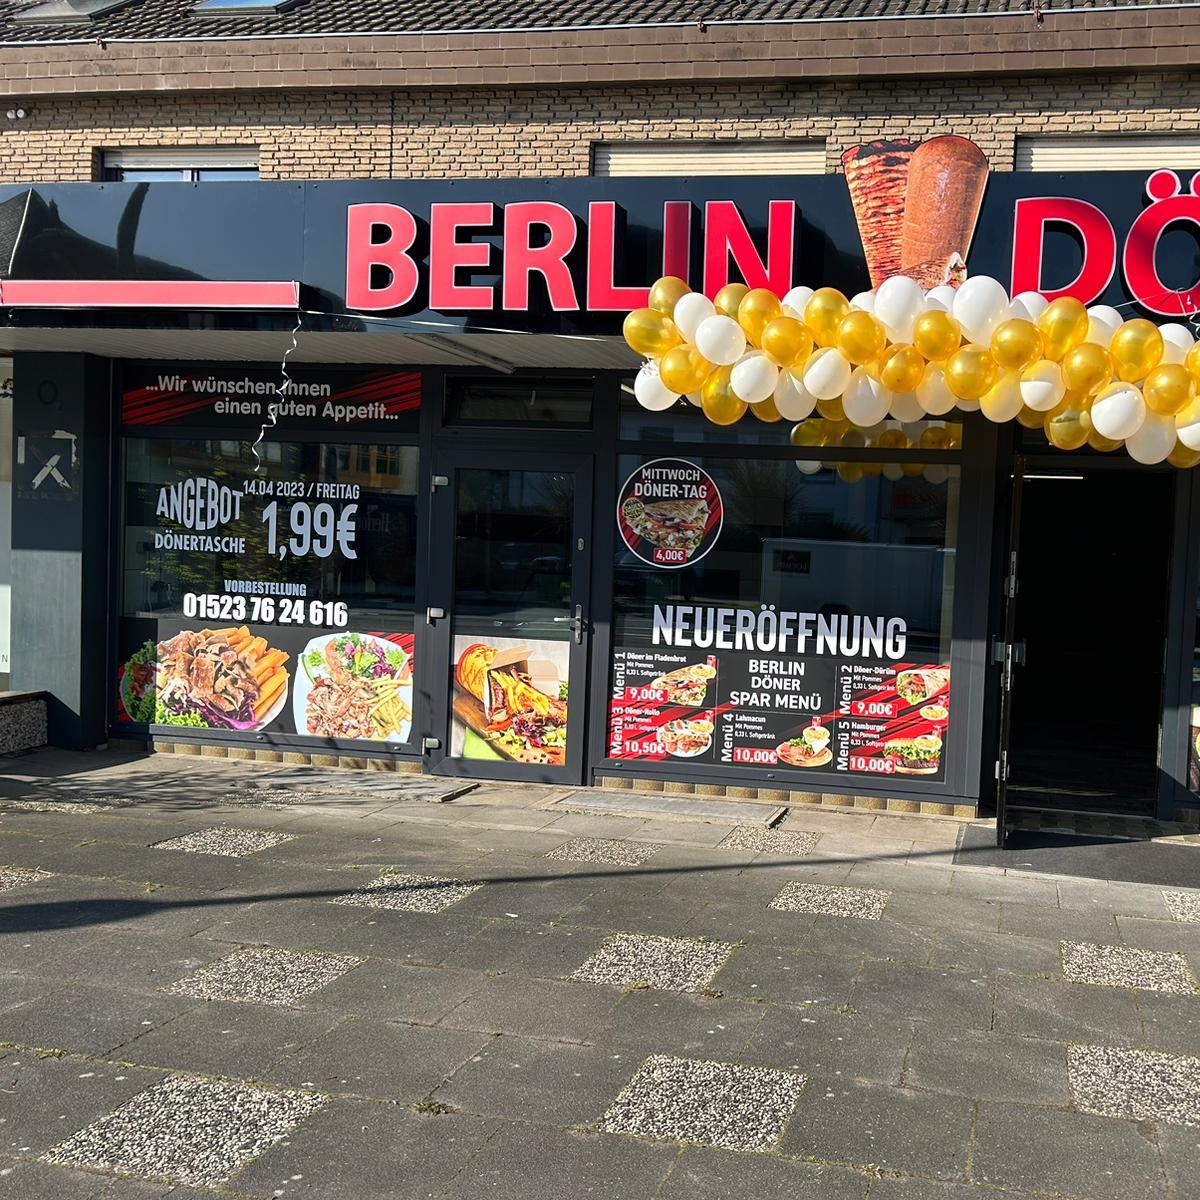 Restaurant "Berlin döner" in Löhne